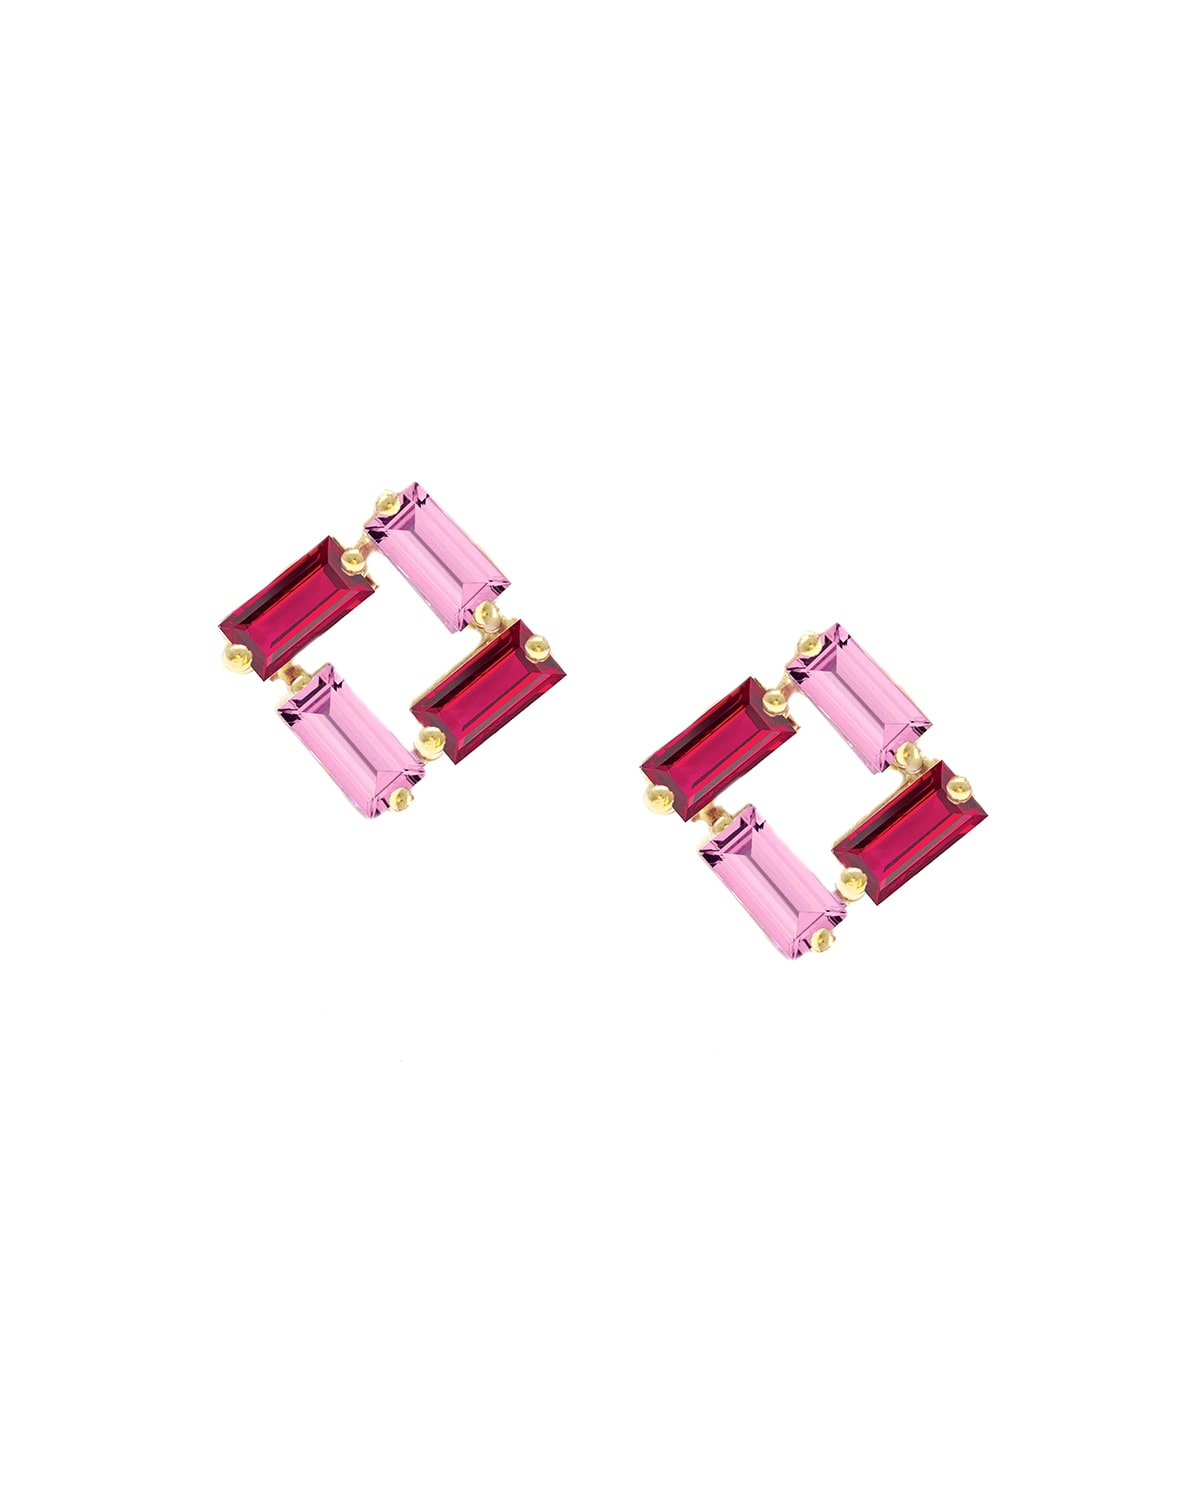 Poppy Finch 14k Gold Ruby & Pink Sapphire Stud Earrings